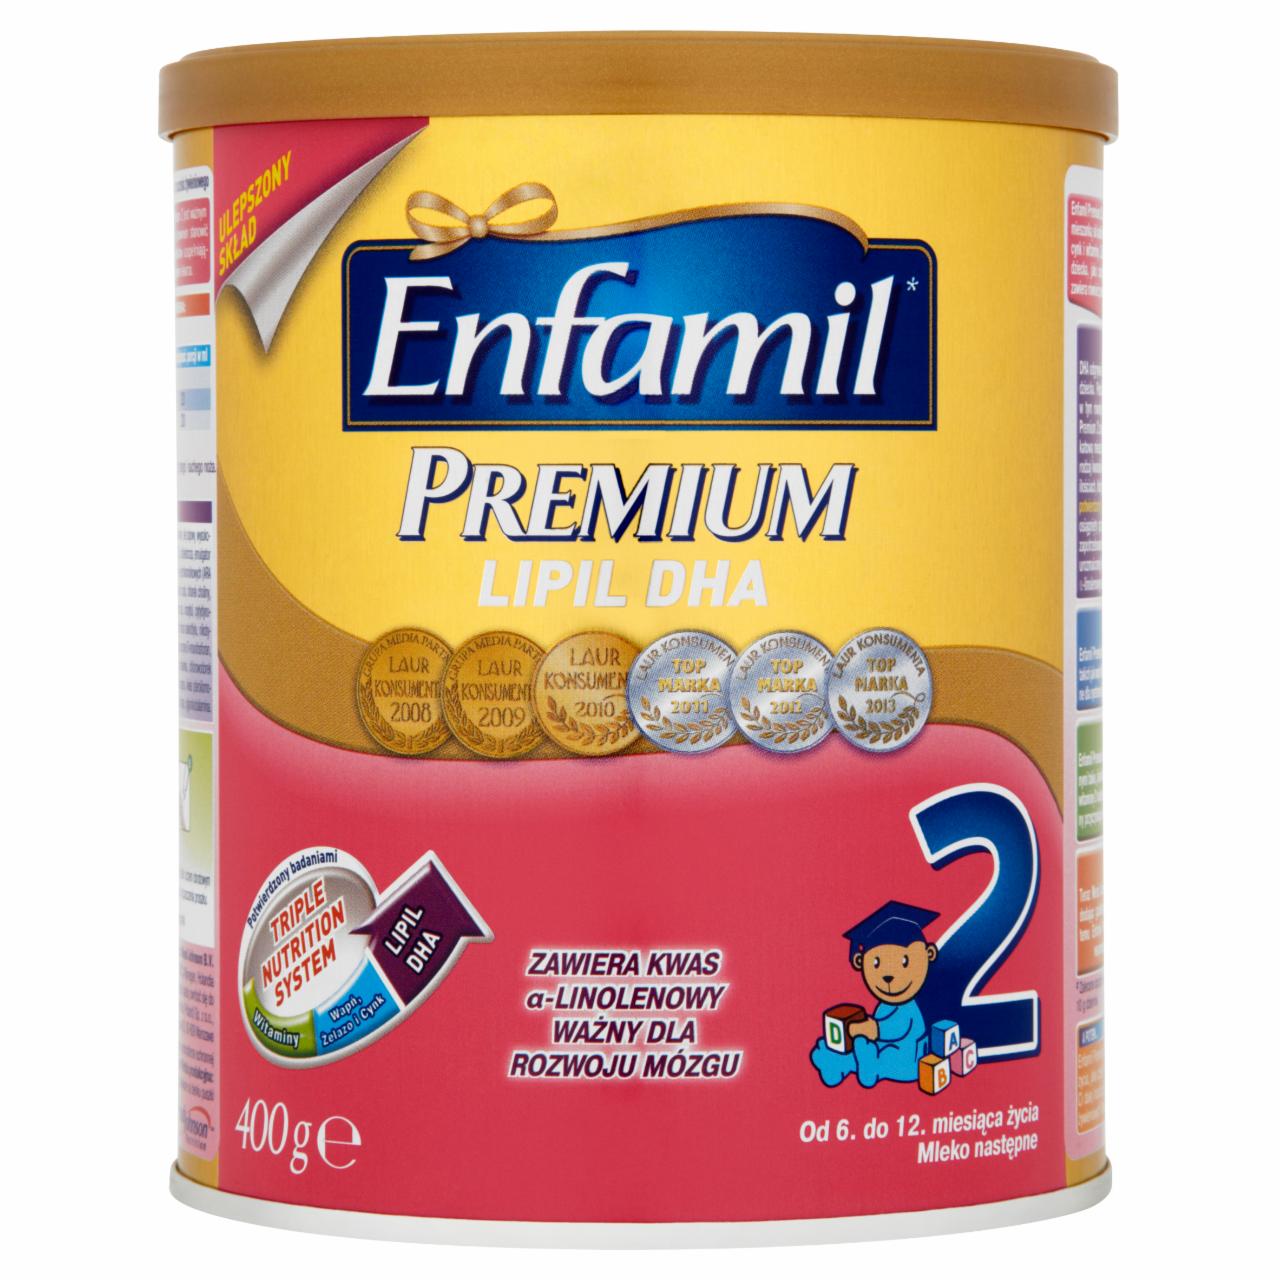 Zdjęcia - Enfamil Premium 2 Lipil DHA Mleko następne od 6. do 12. miesiąca życia 400 g